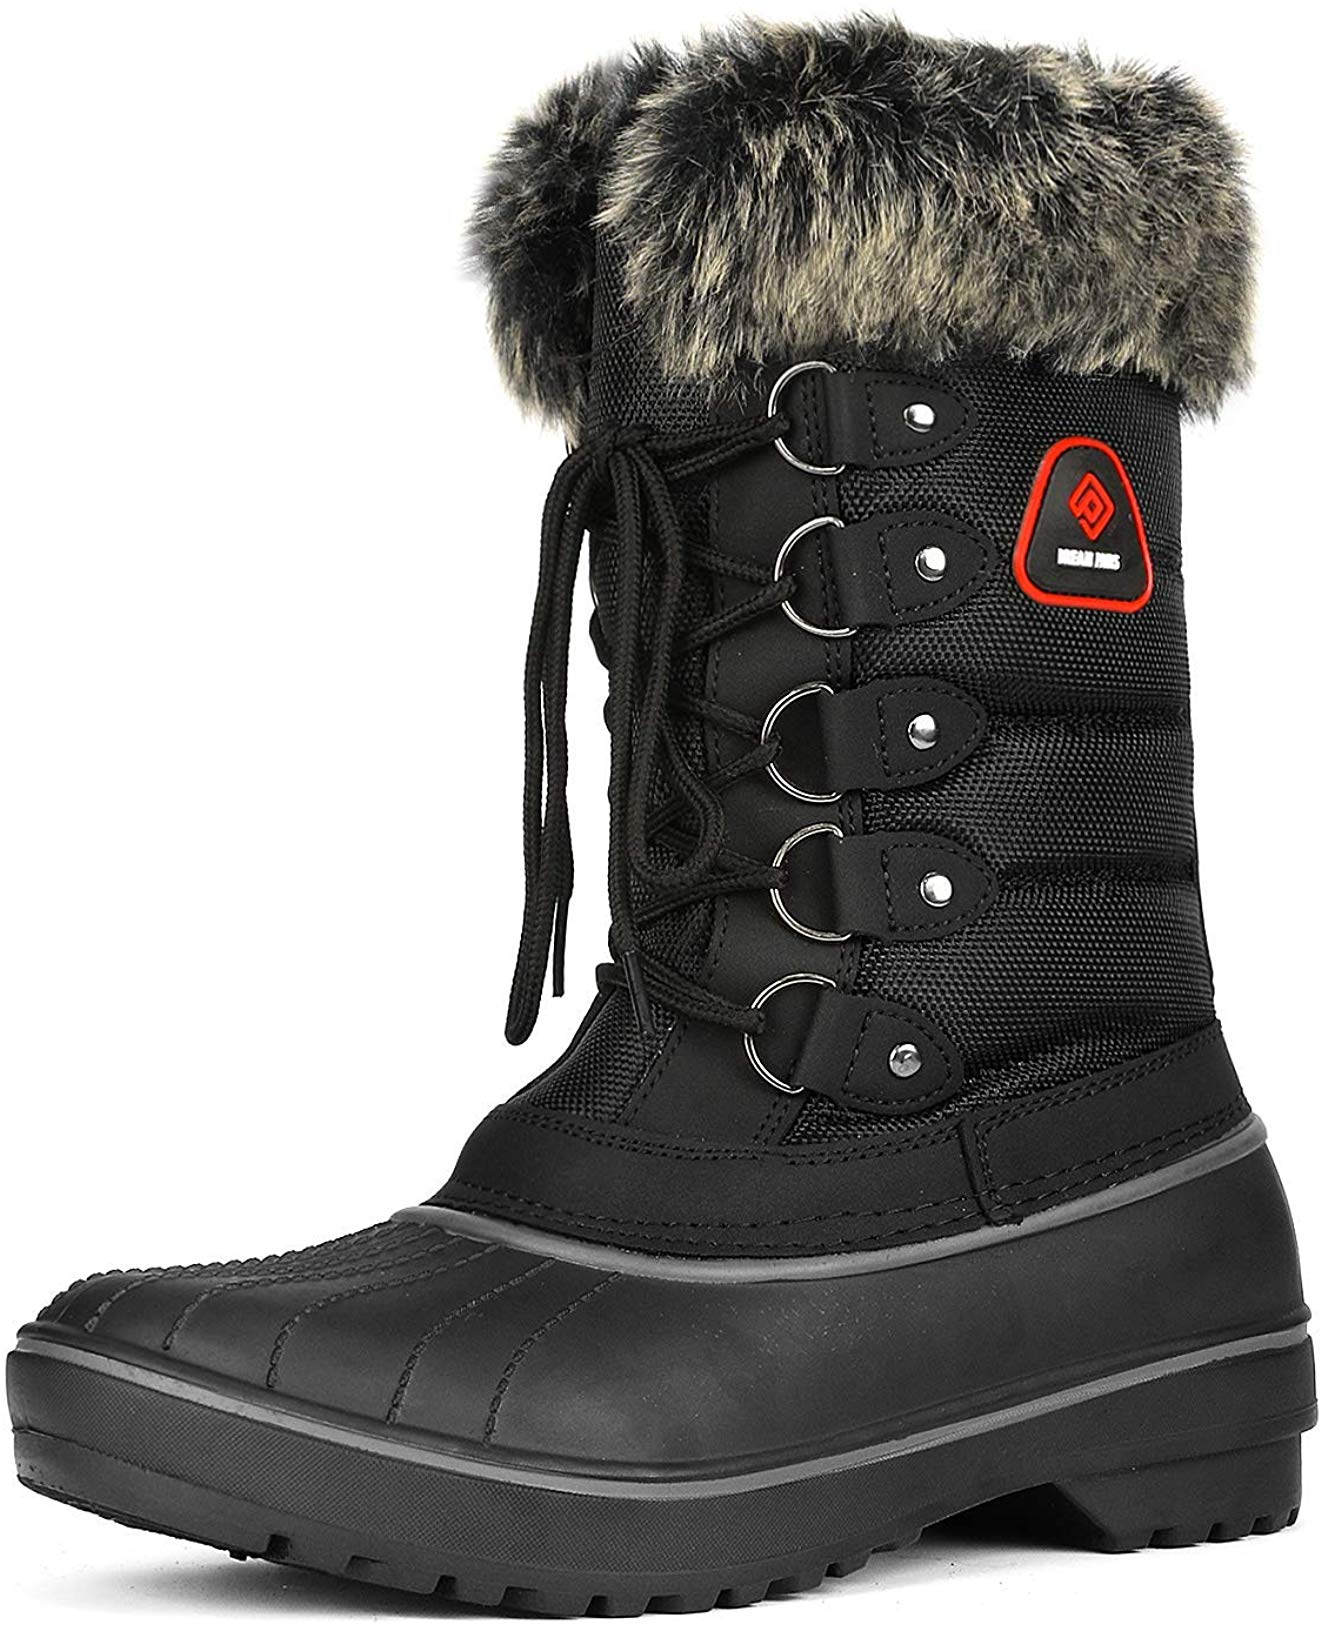 MUMUWU Mens Classical Snow Boots Cotton Side Zipper Winter Faux Fleece Inside Home Shoes Winter Boots